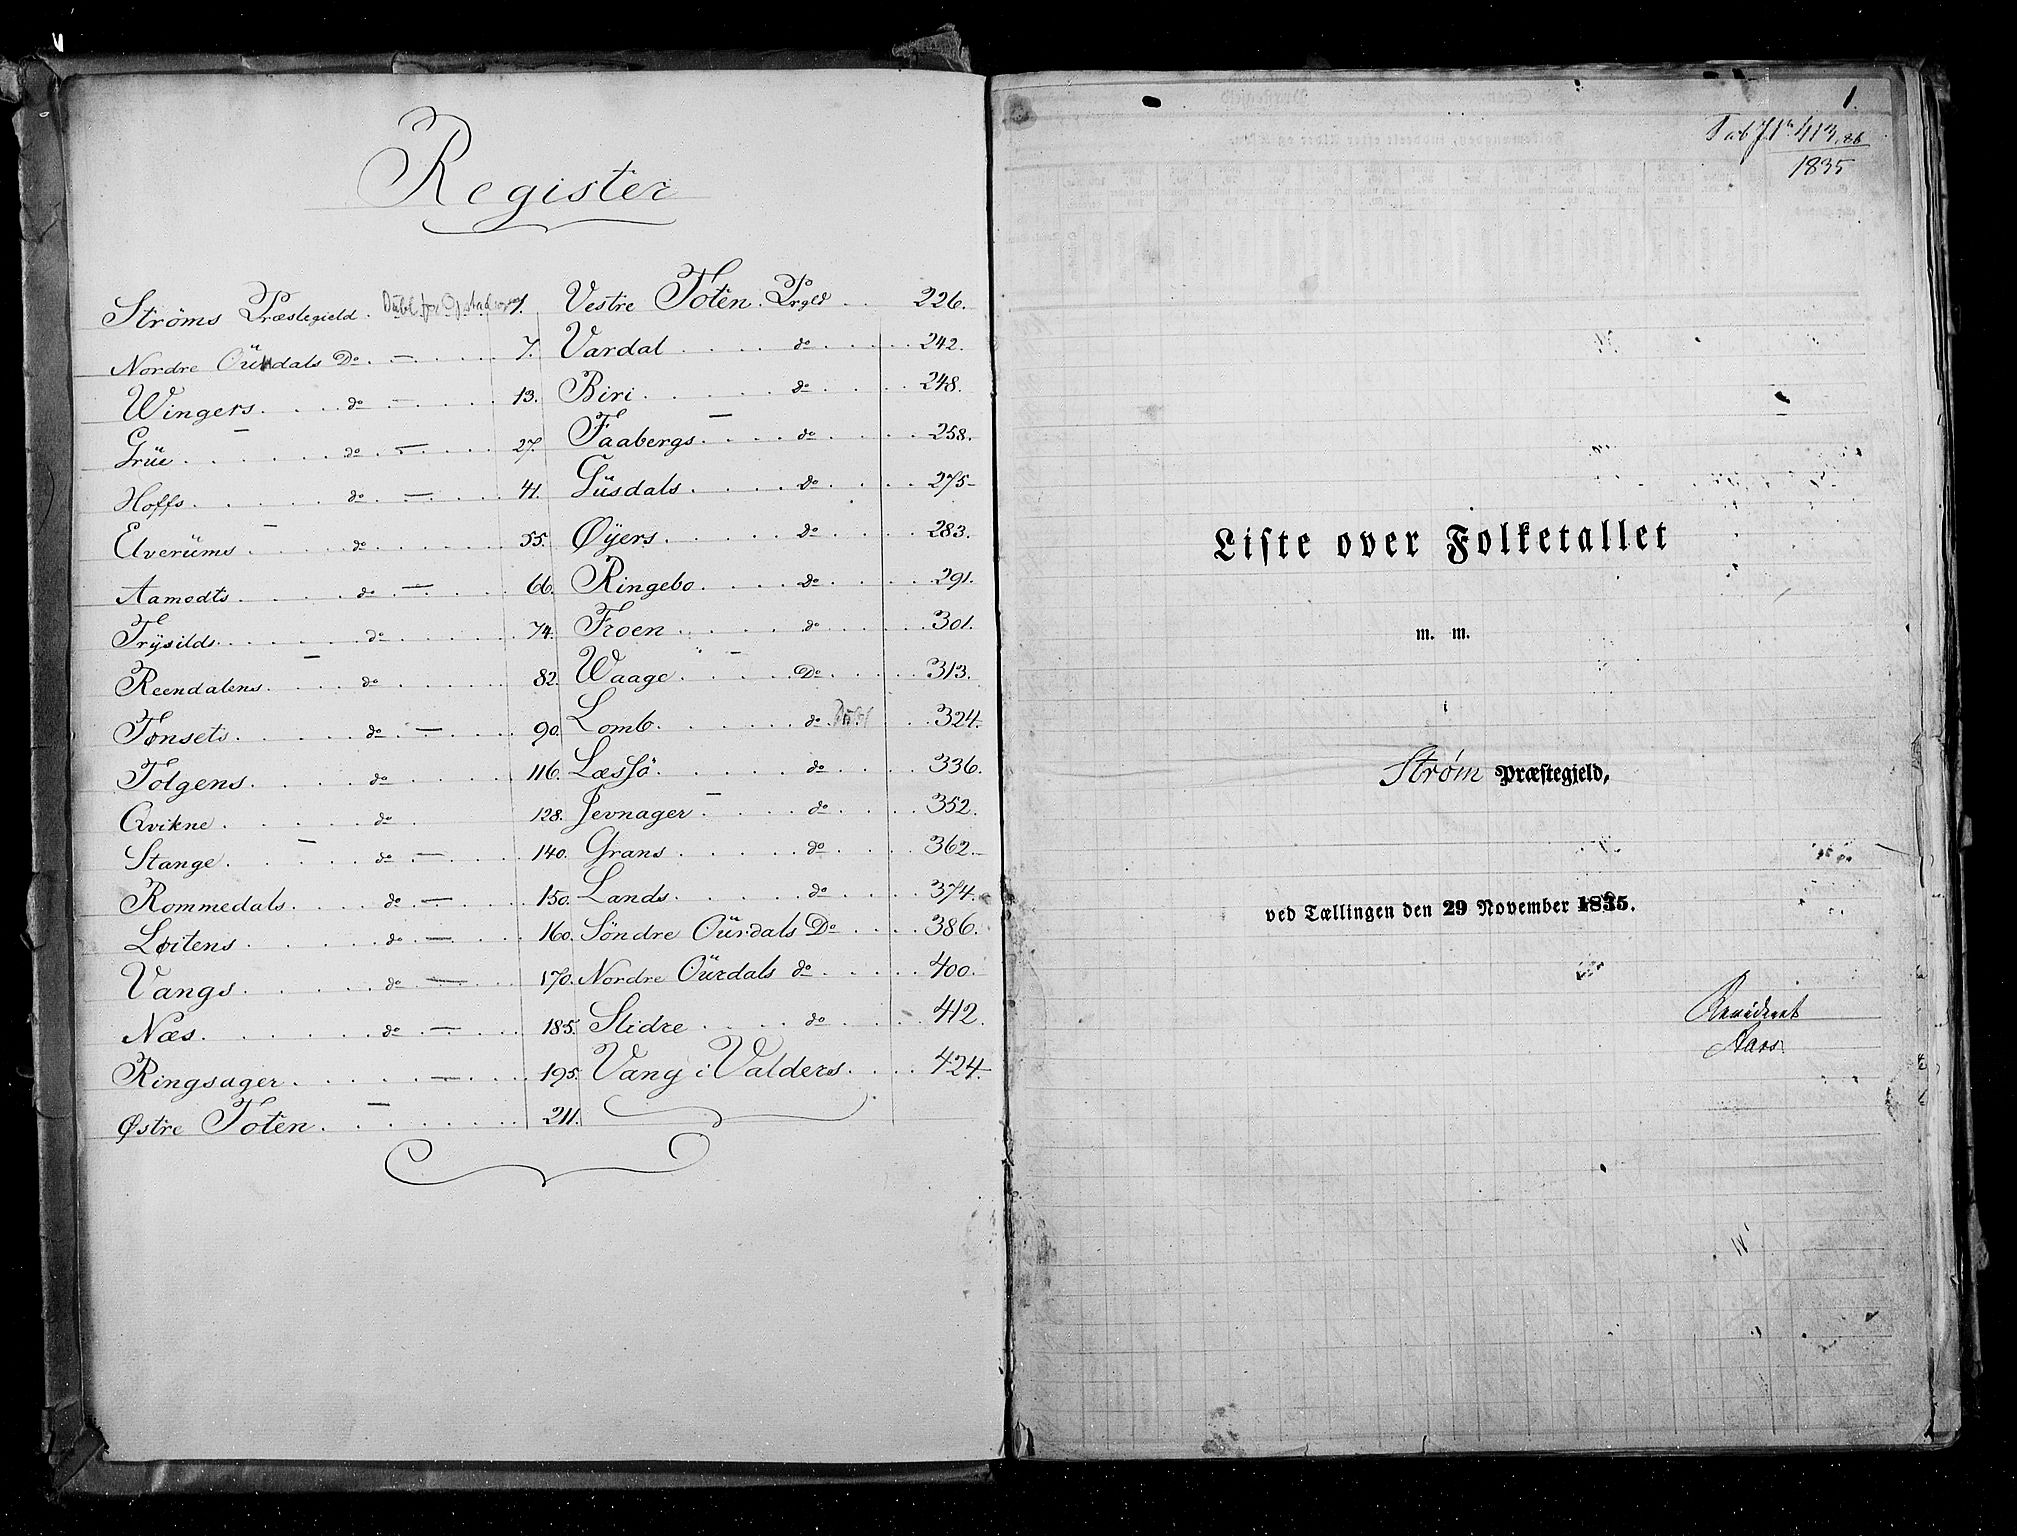 RA, Census 1835, vol. 3: Hedemarken amt og Kristians amt, 1835, p. 1